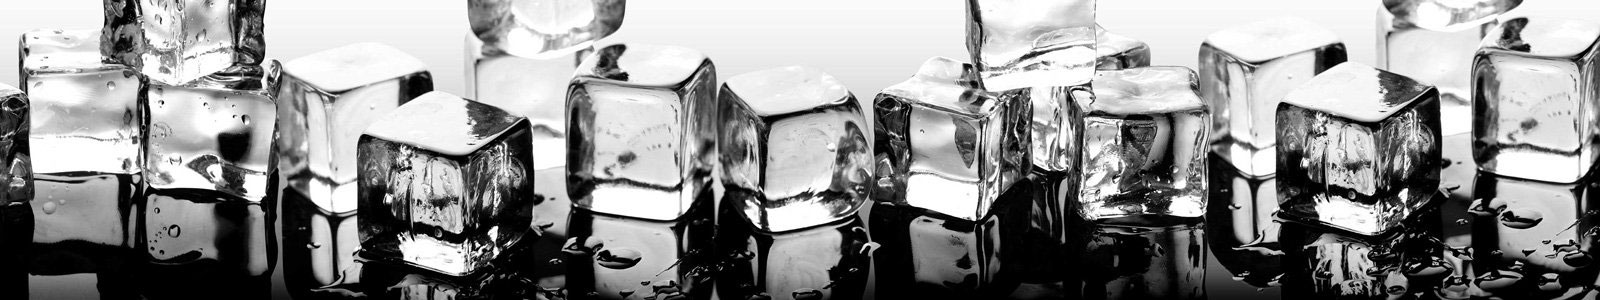 №6330 - Ряд кубиков льда